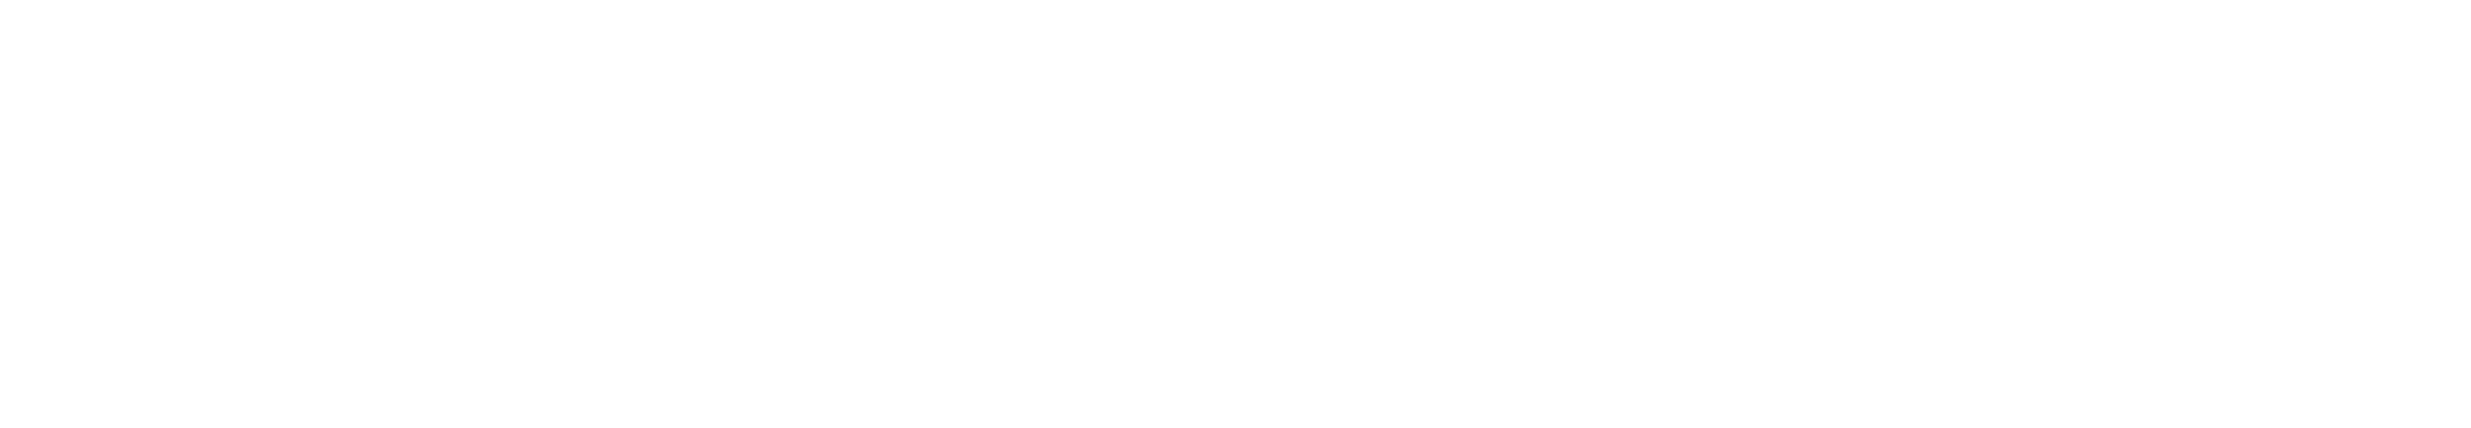 astercaster.com